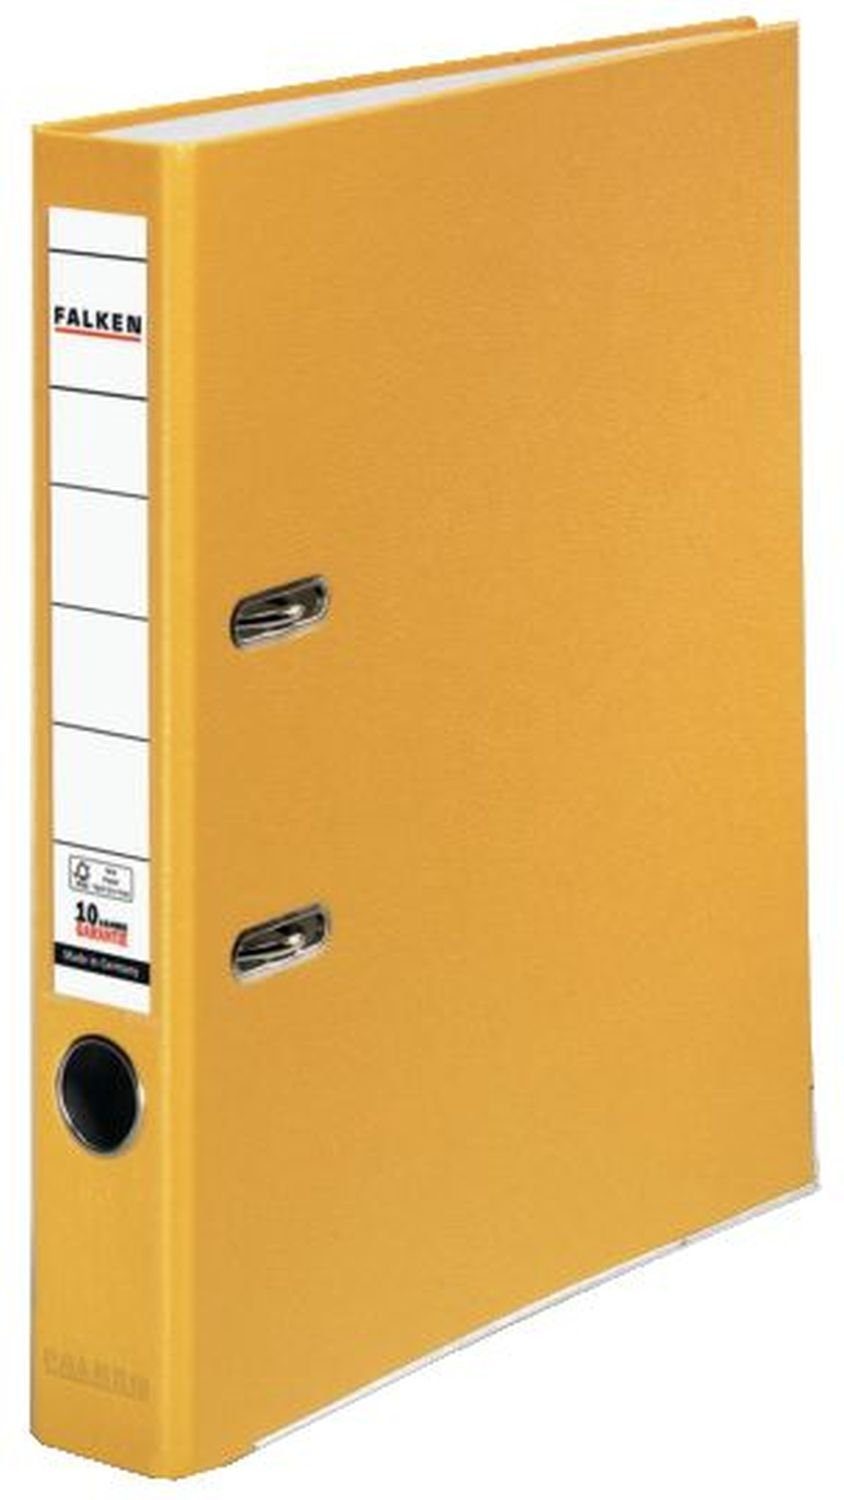 Falken Kugelschreiber Ordner PP-Color S50 - A4, 5 cm, gelb